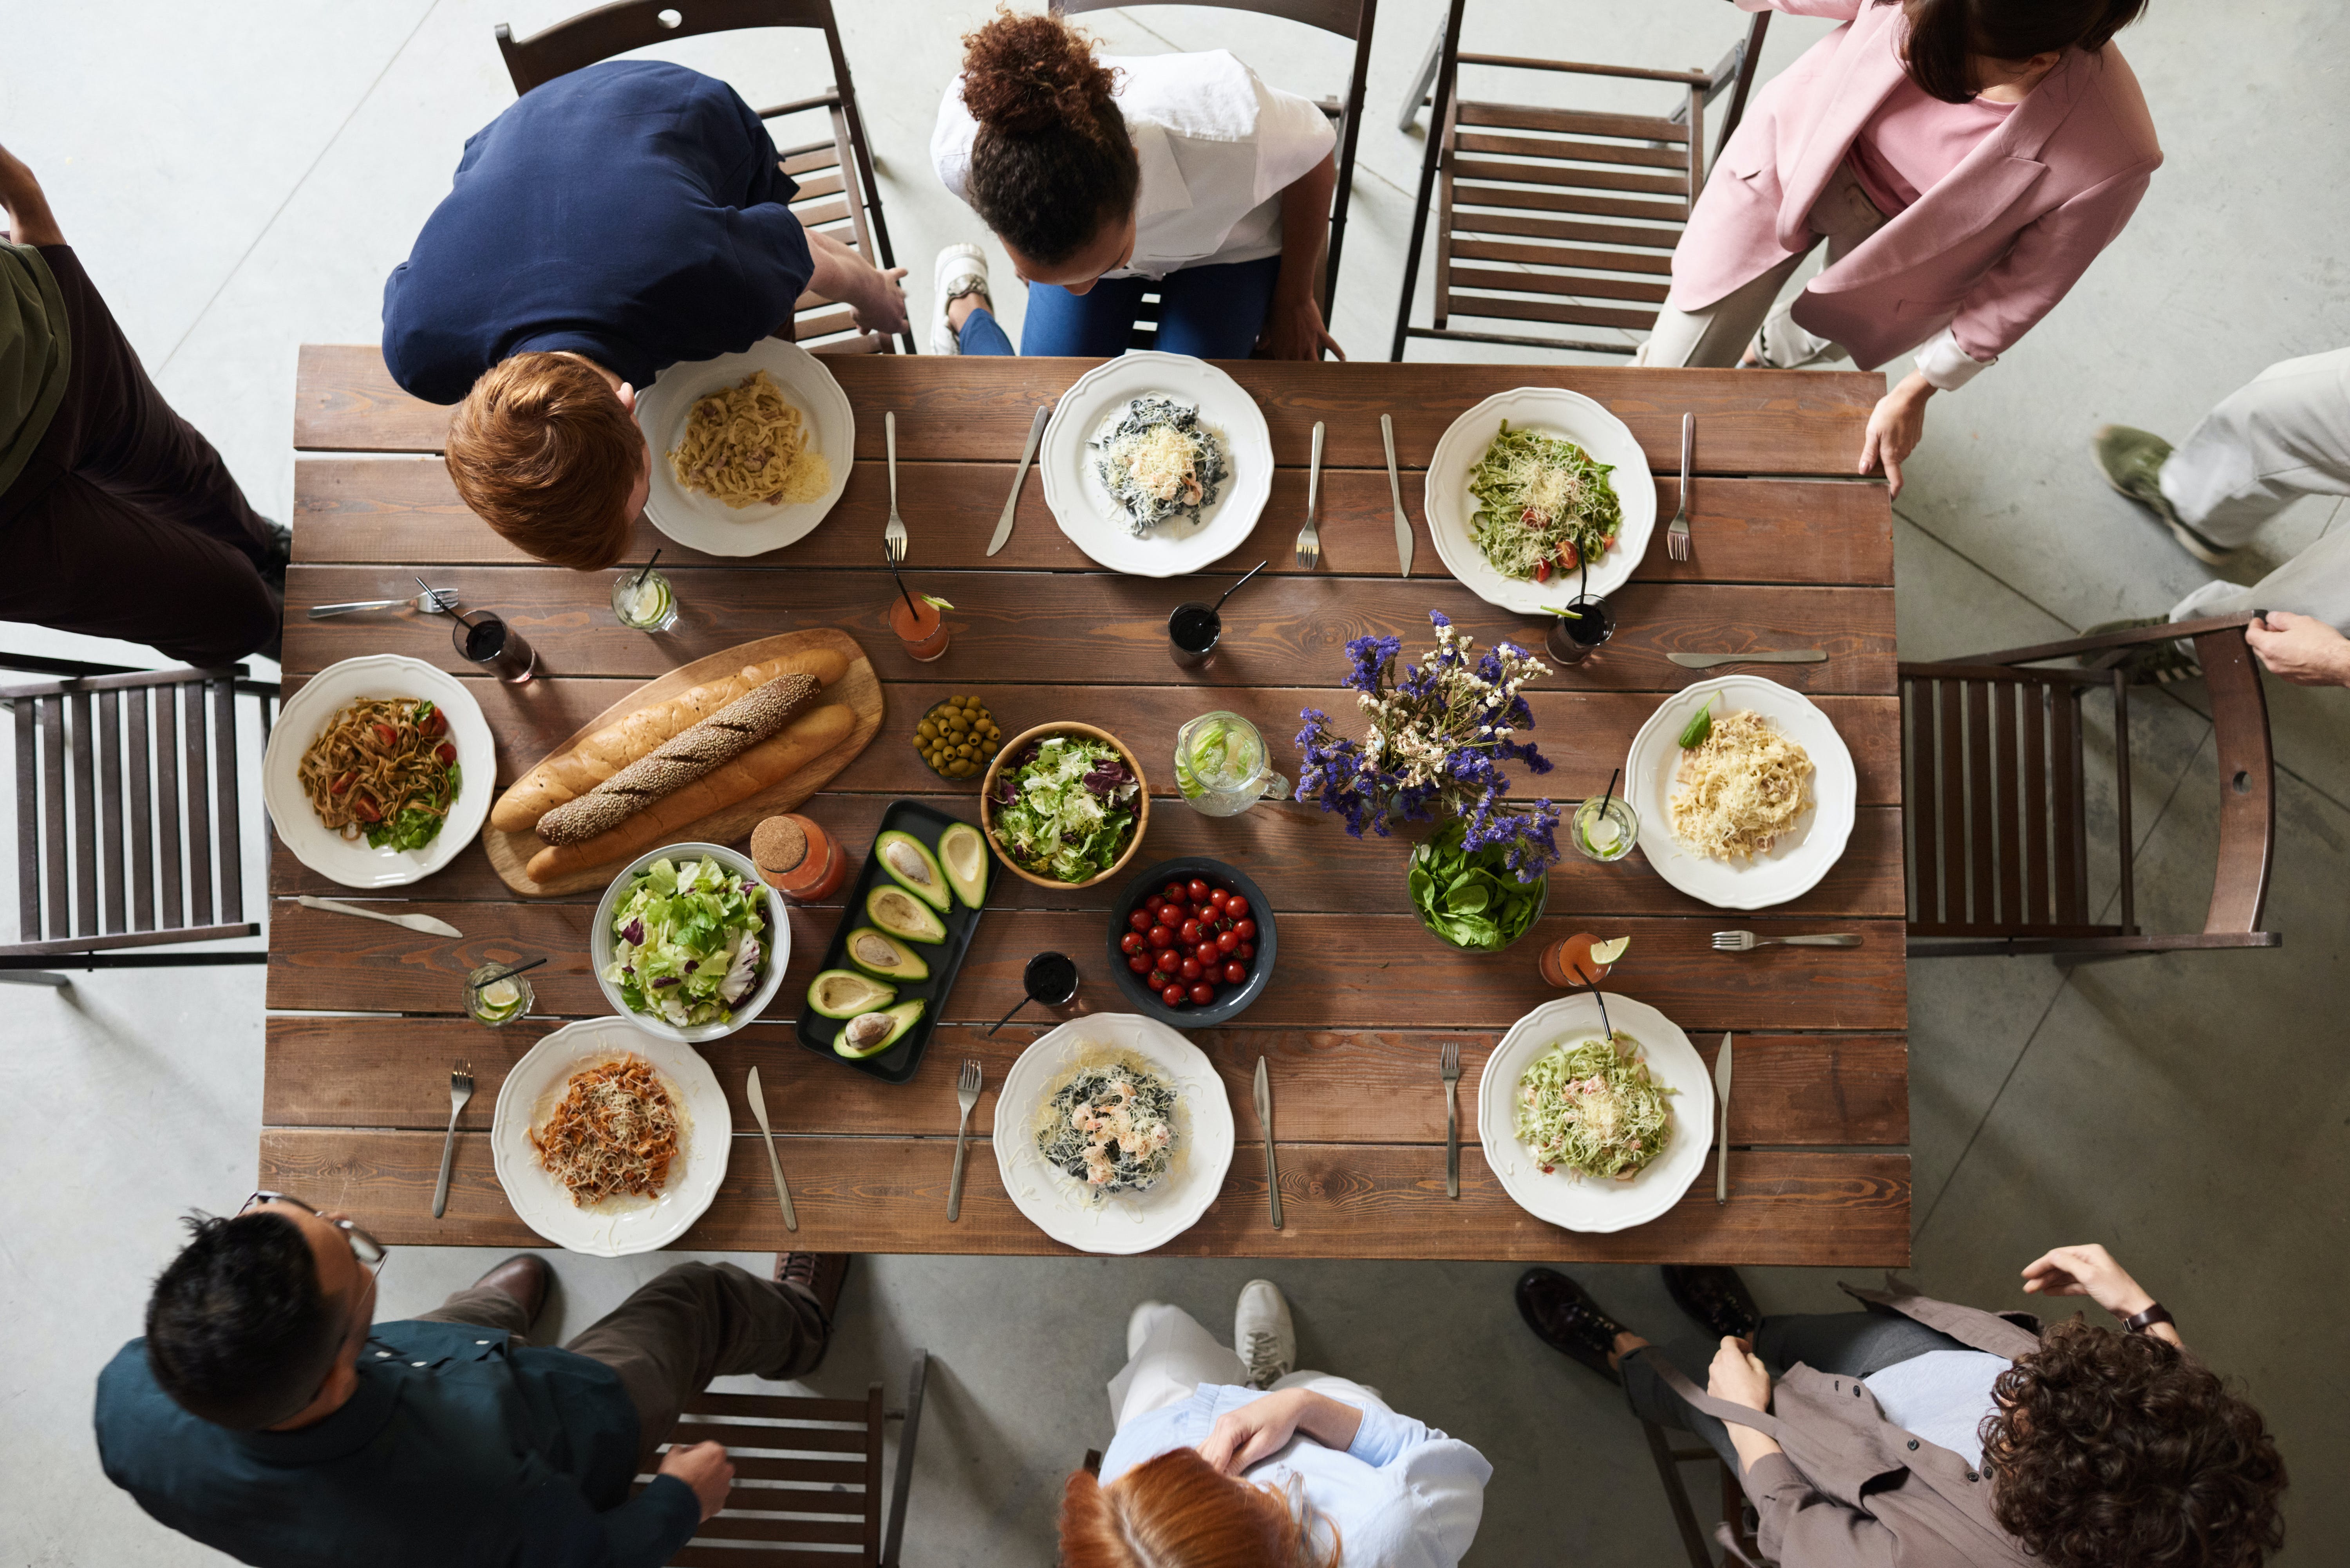 Freunde, die gemeinsam eine Mahlzeit einnehmen | Quelle: Pexels